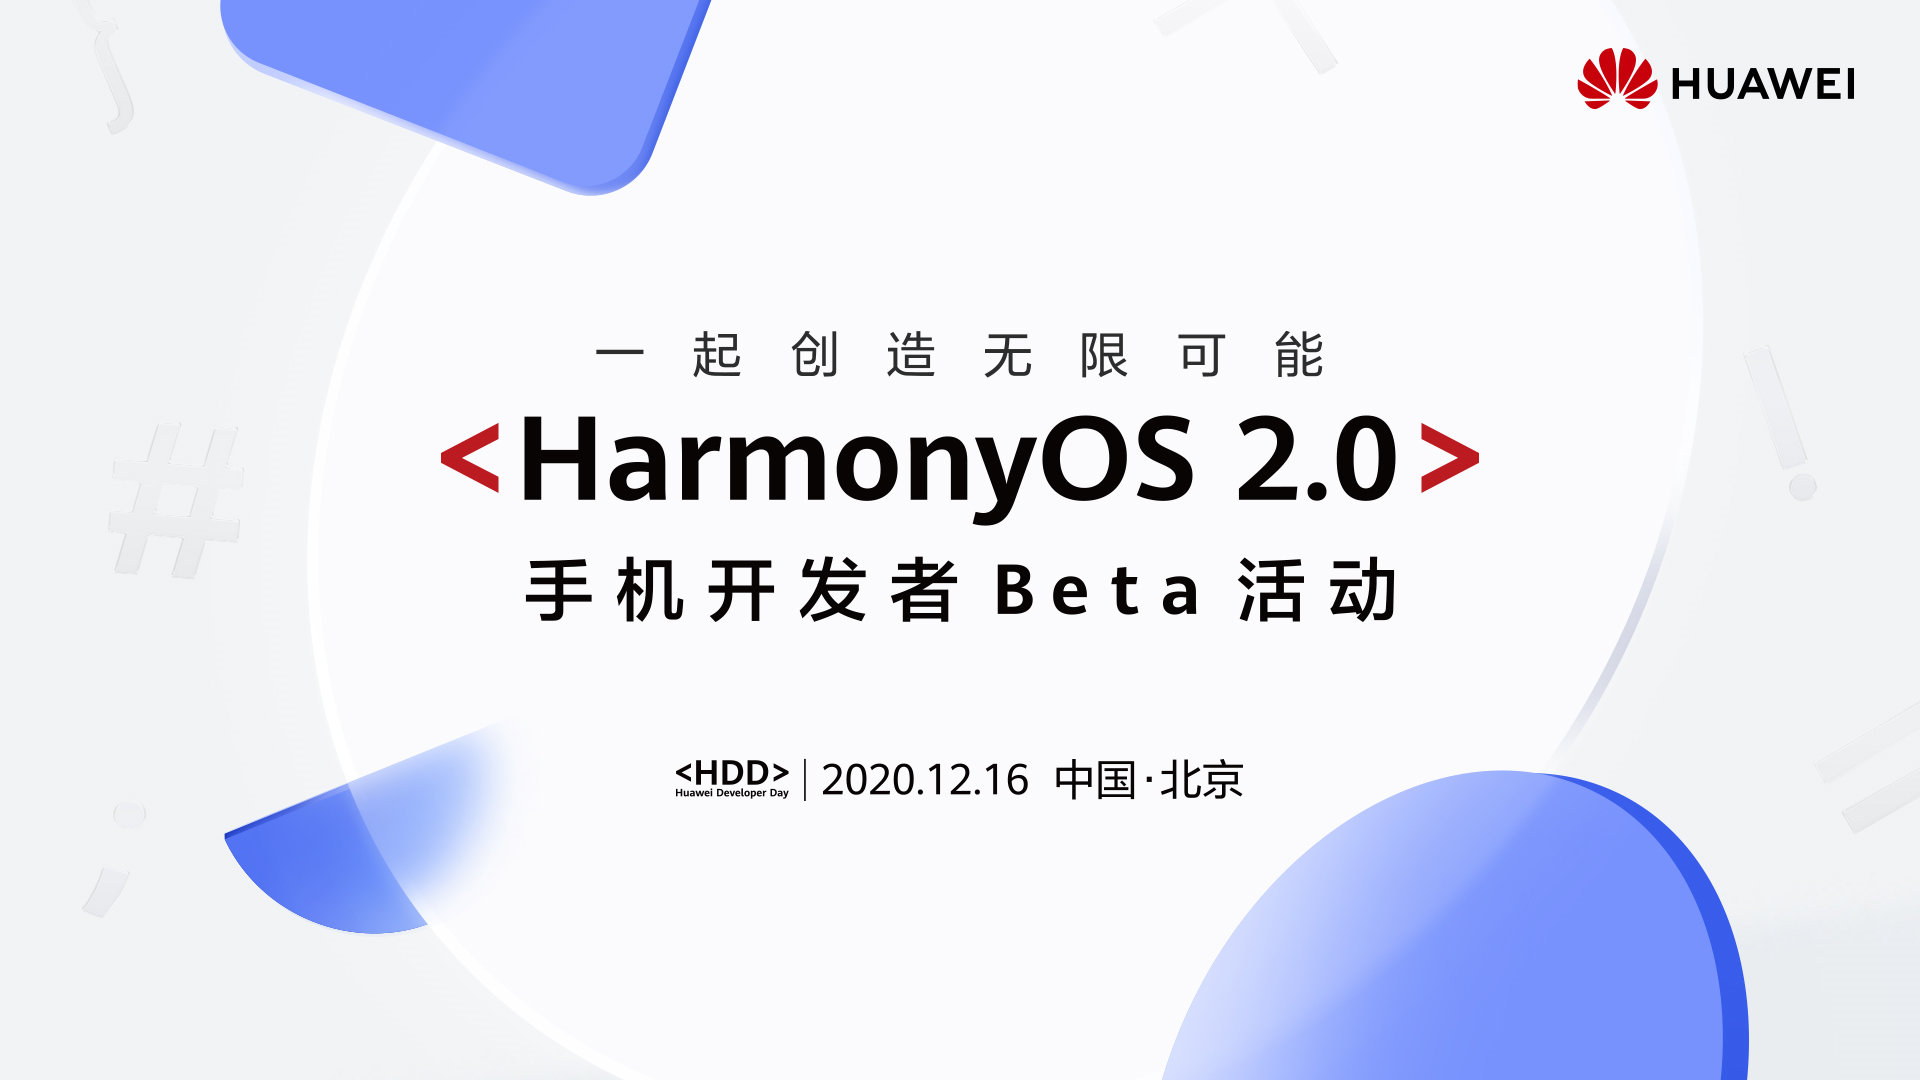 huawei-harmonyos-mobile-beta-hdd-december-16-2020